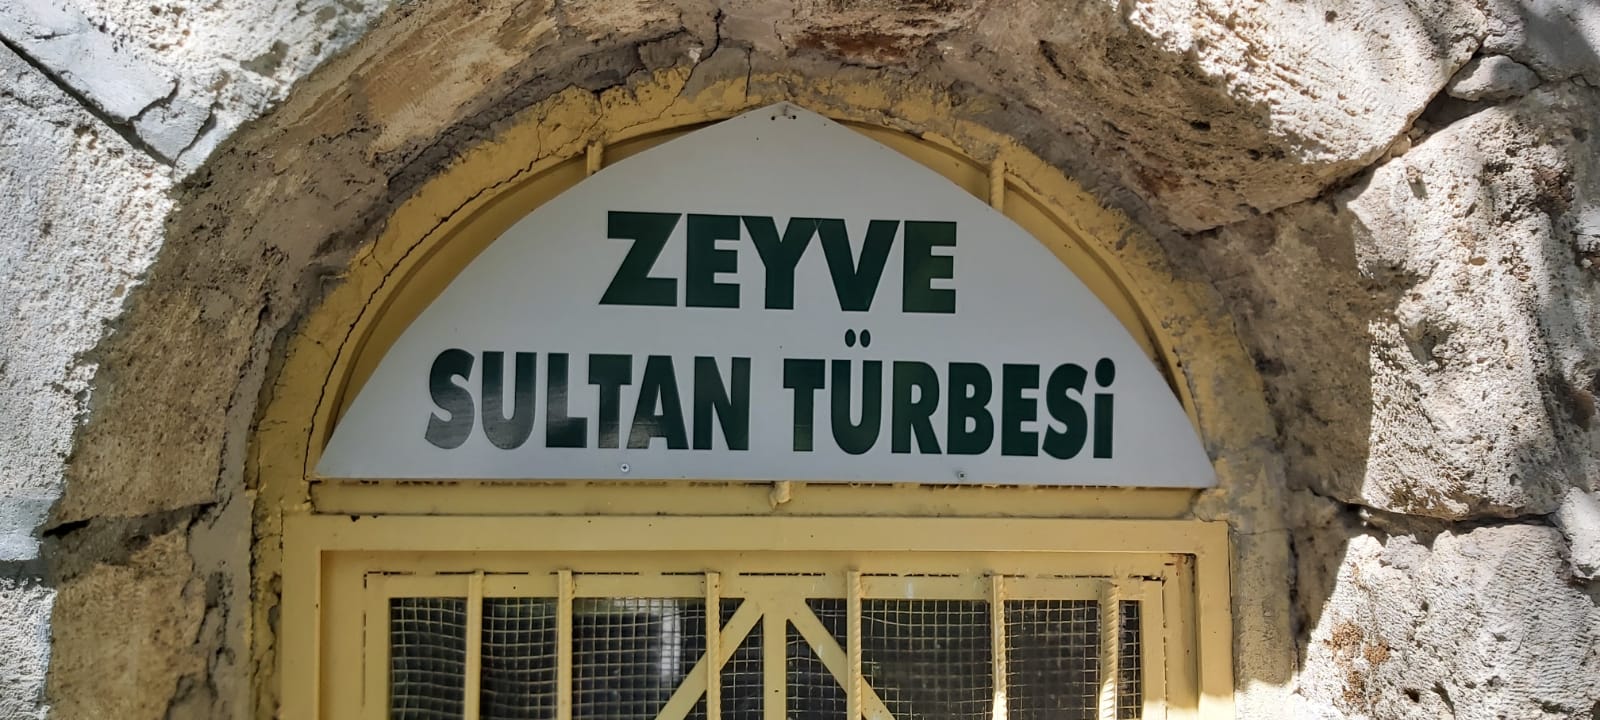 Zeyve Sultan